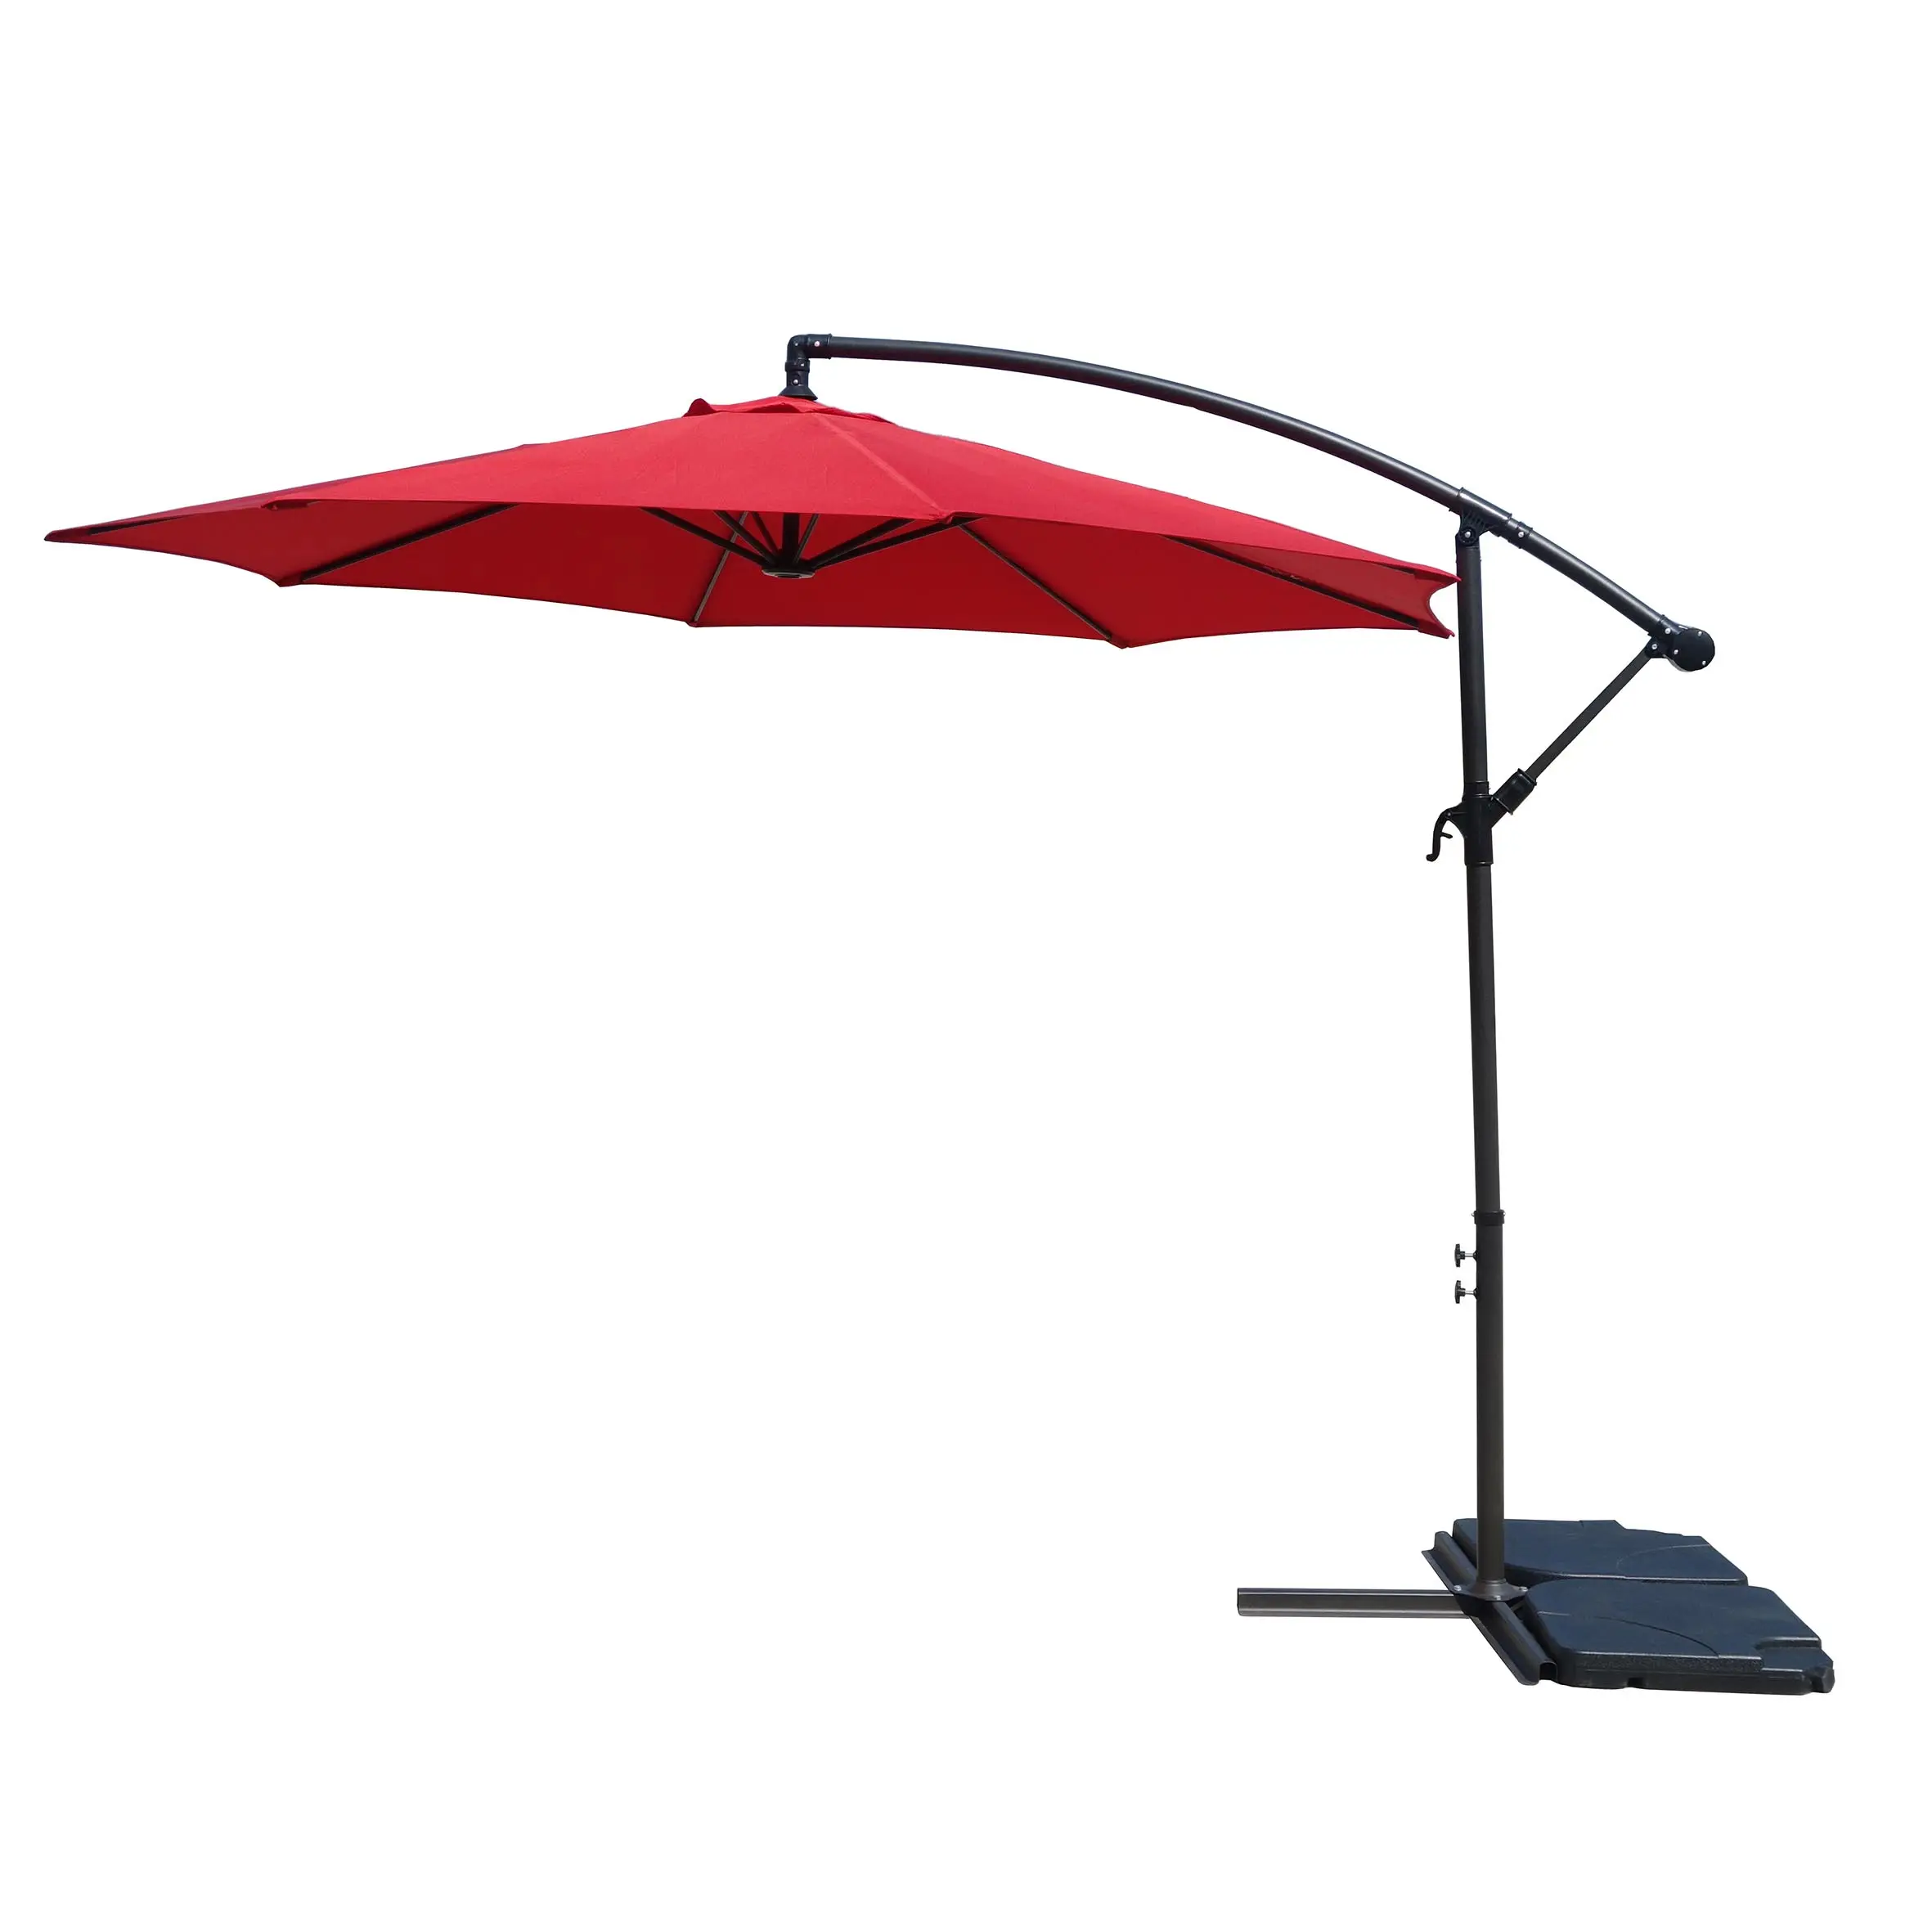 Ombrello a sbalzo moderno per mobili da esterno in hotel cortili parchi esterni uso esterno basi per ombrelloni